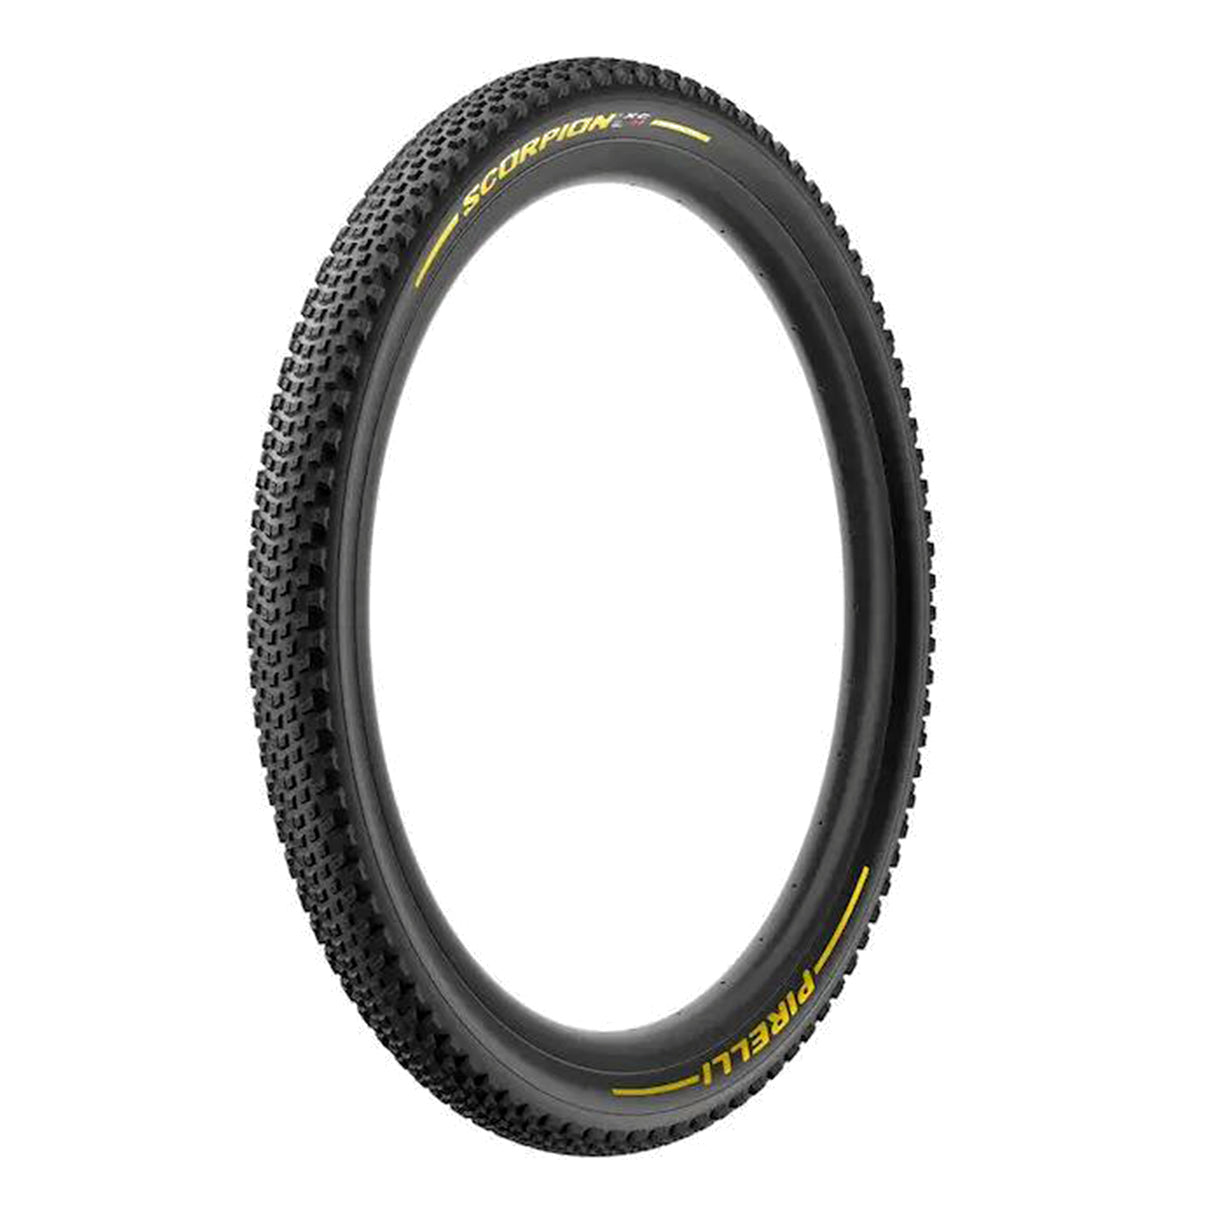 Pirelli Scorpion XC H 29" MTB Tyre